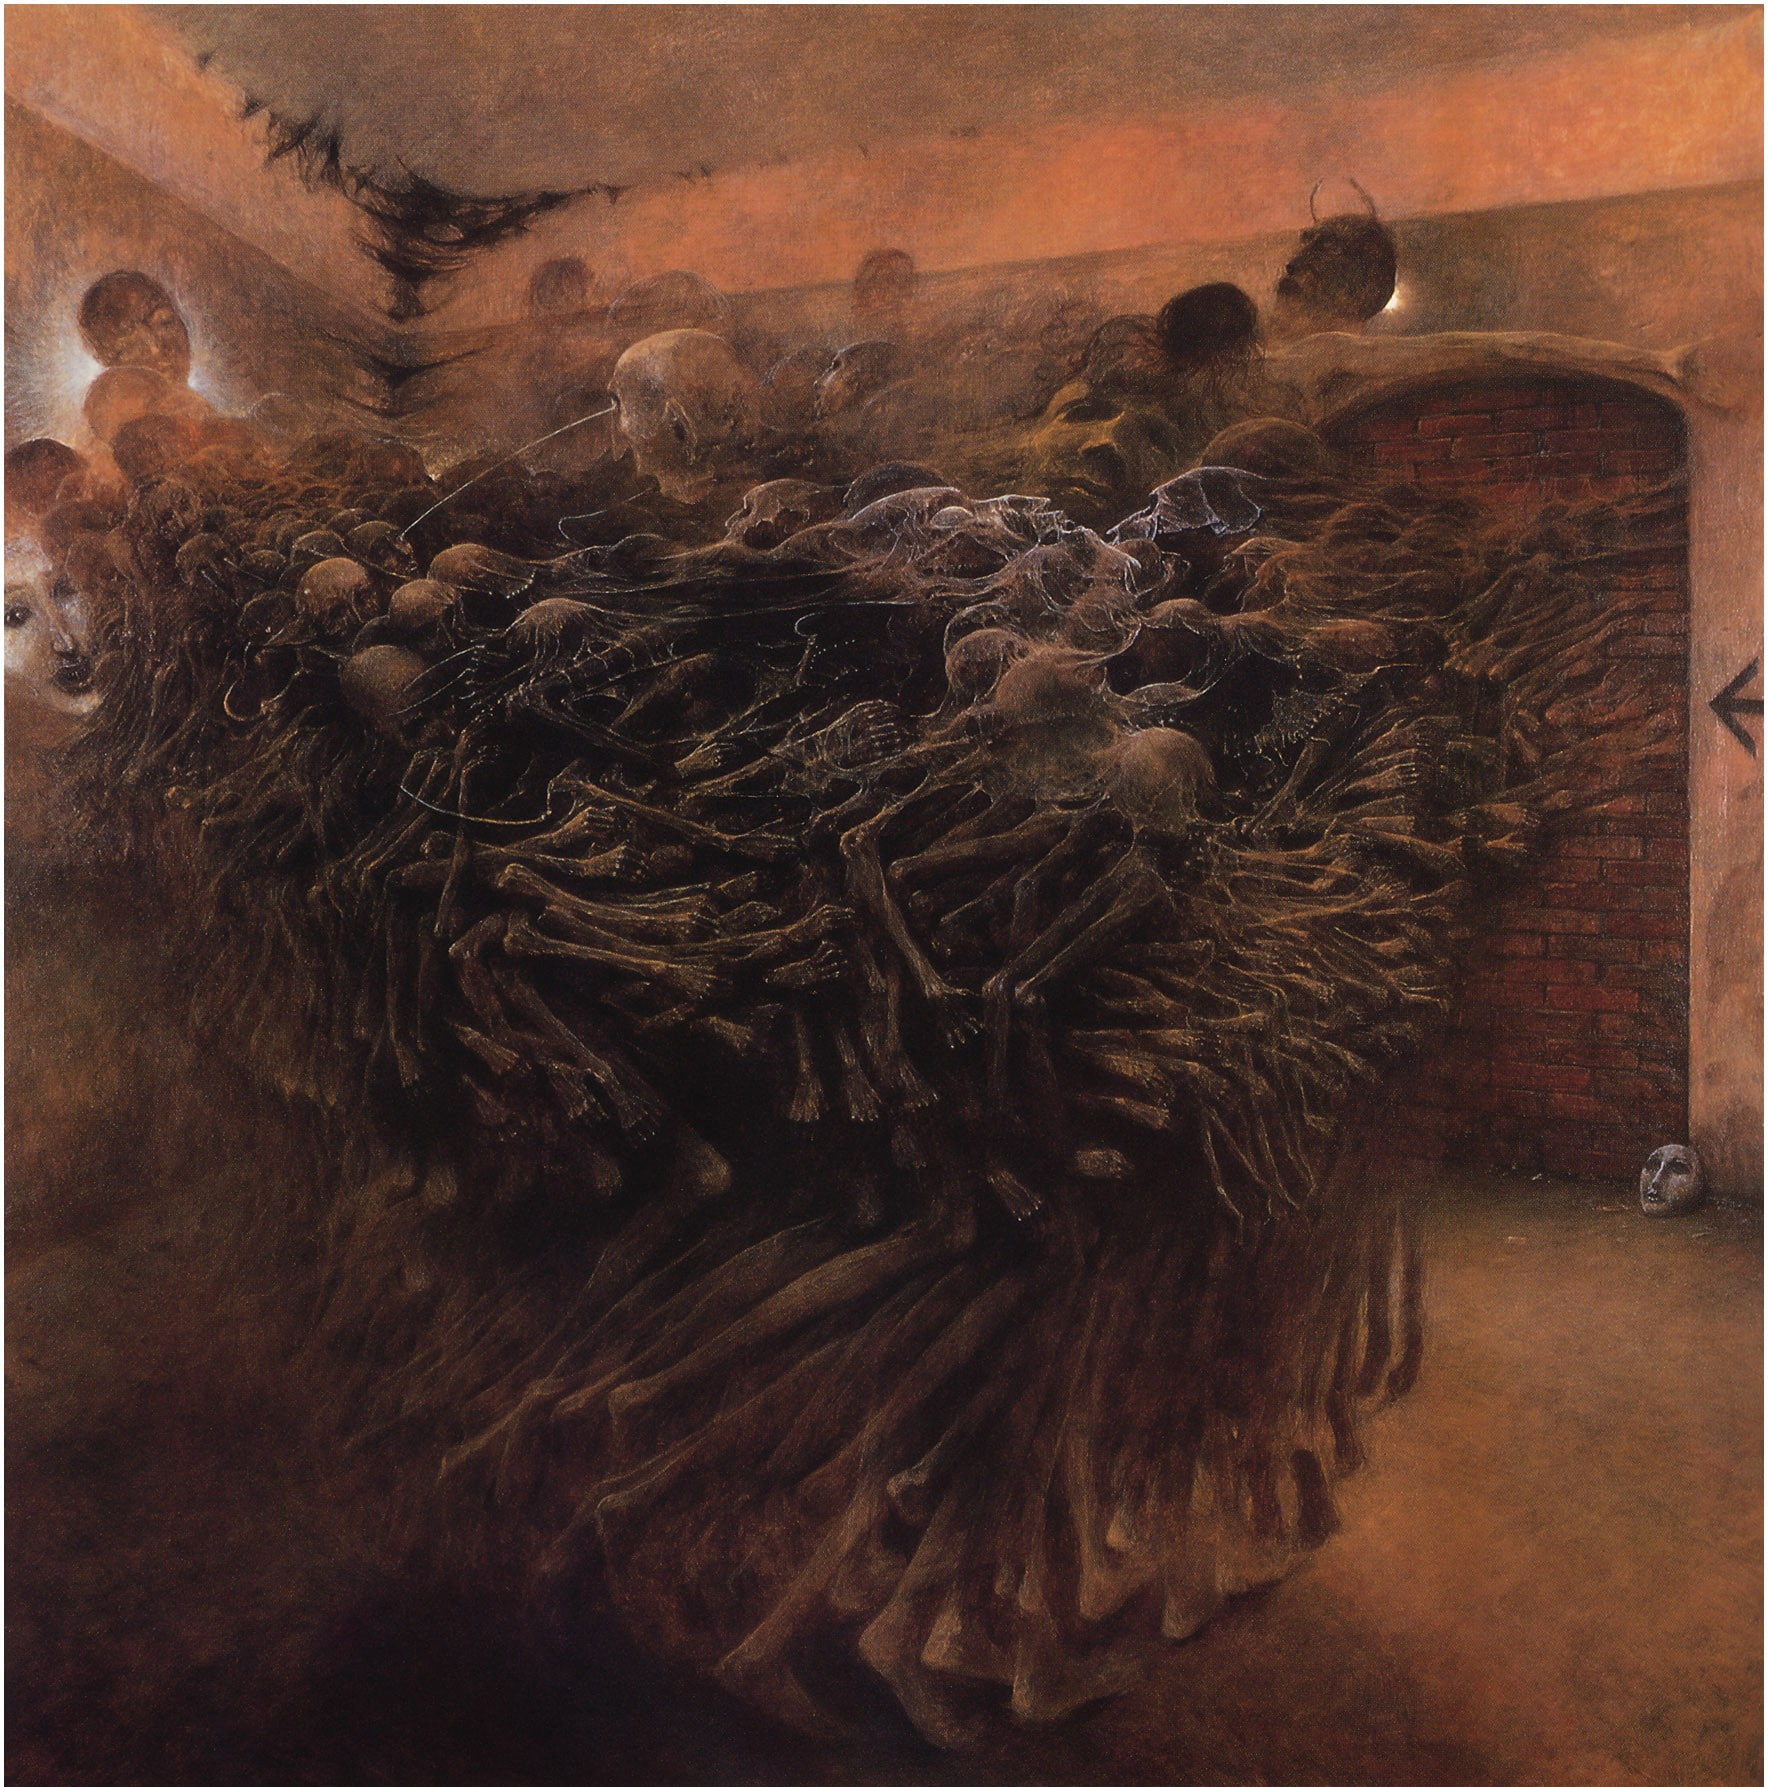 Zdzisław Beksiński, Artwork, Dark, Skeletons, Face On Ground